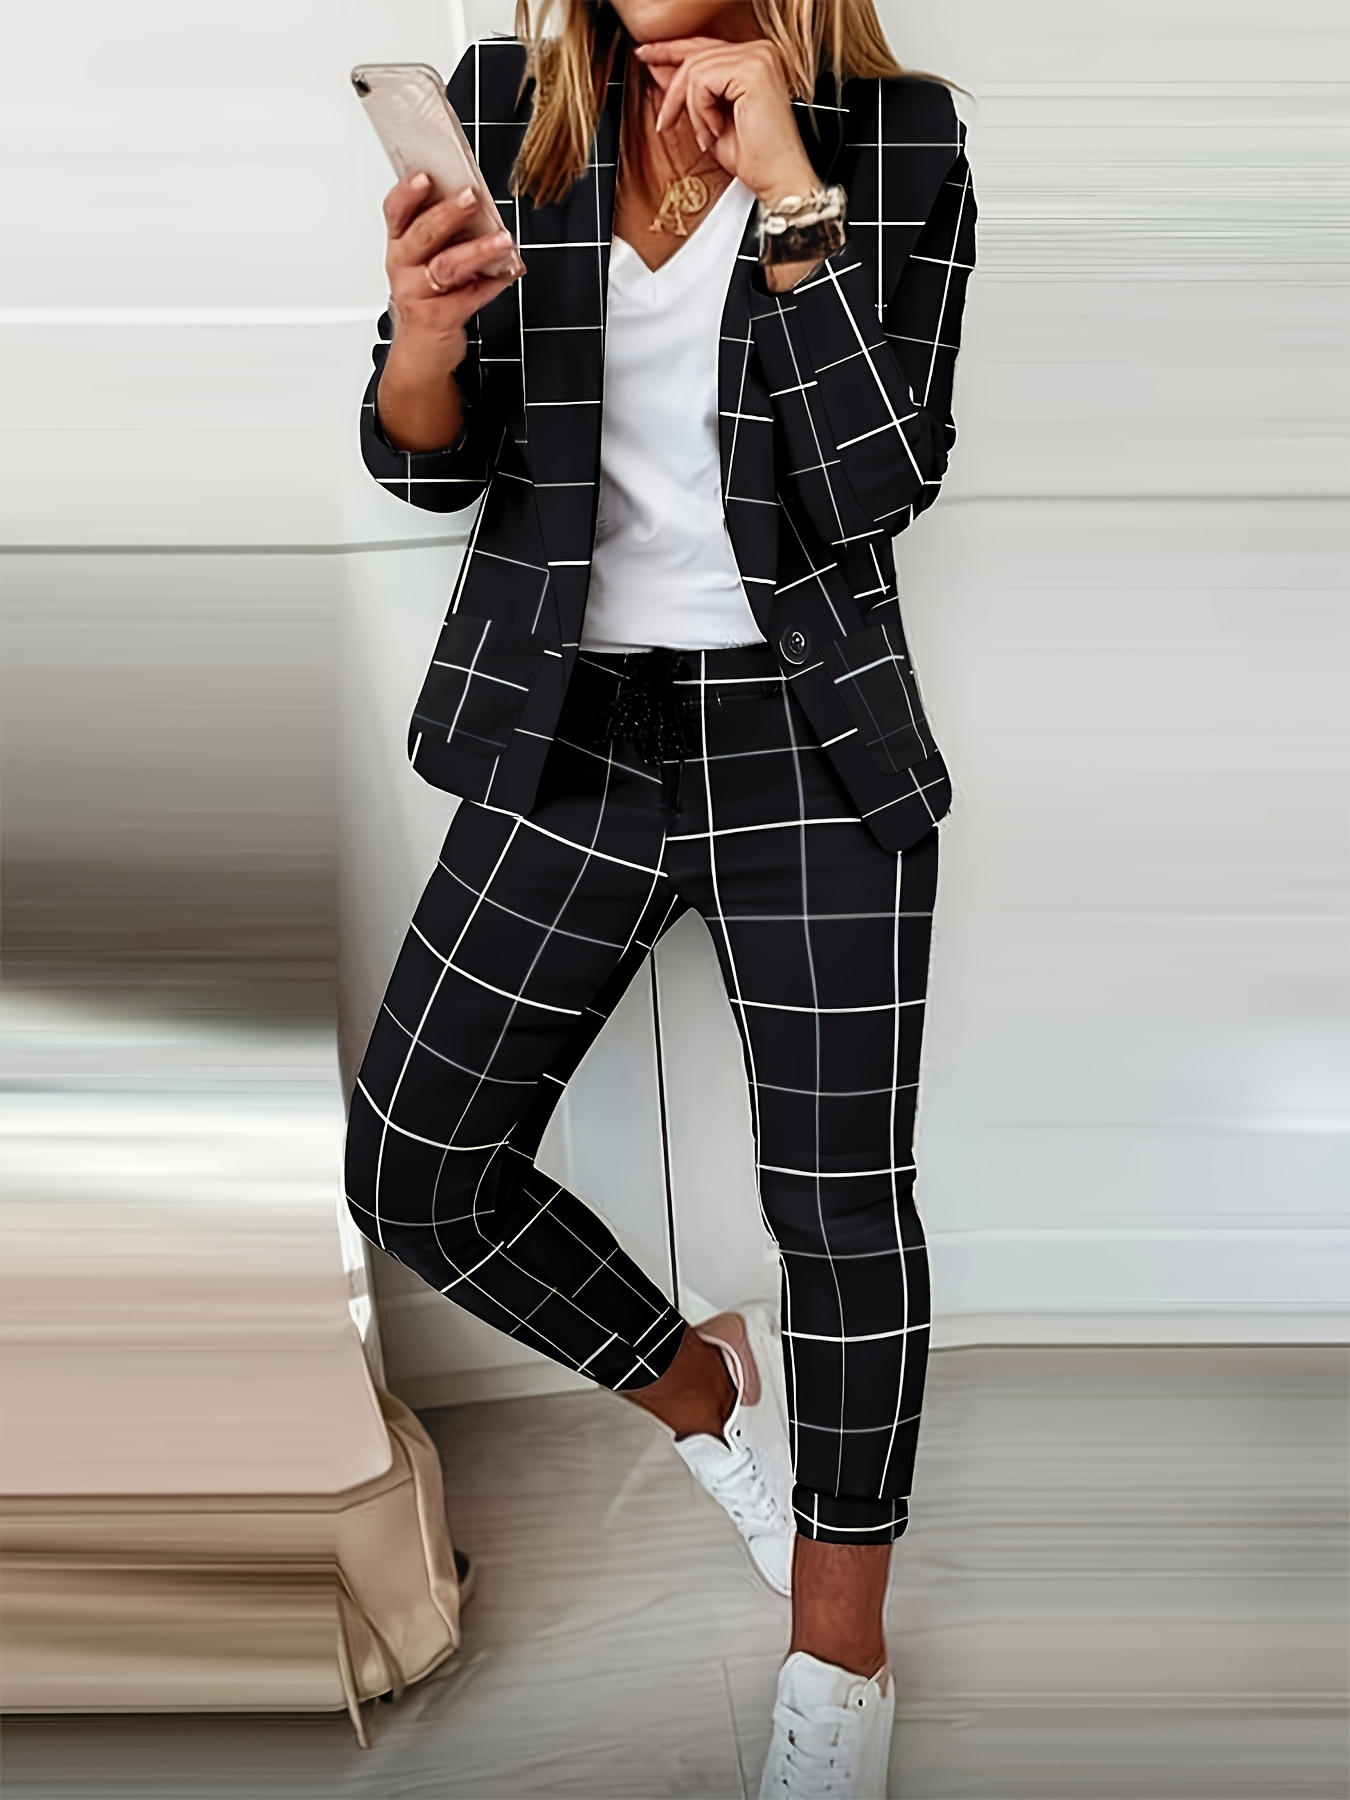 Trouser Suit: Women's Trouser/Straight Suits | Designer Trouser Dresses |  Andaazfashion.com